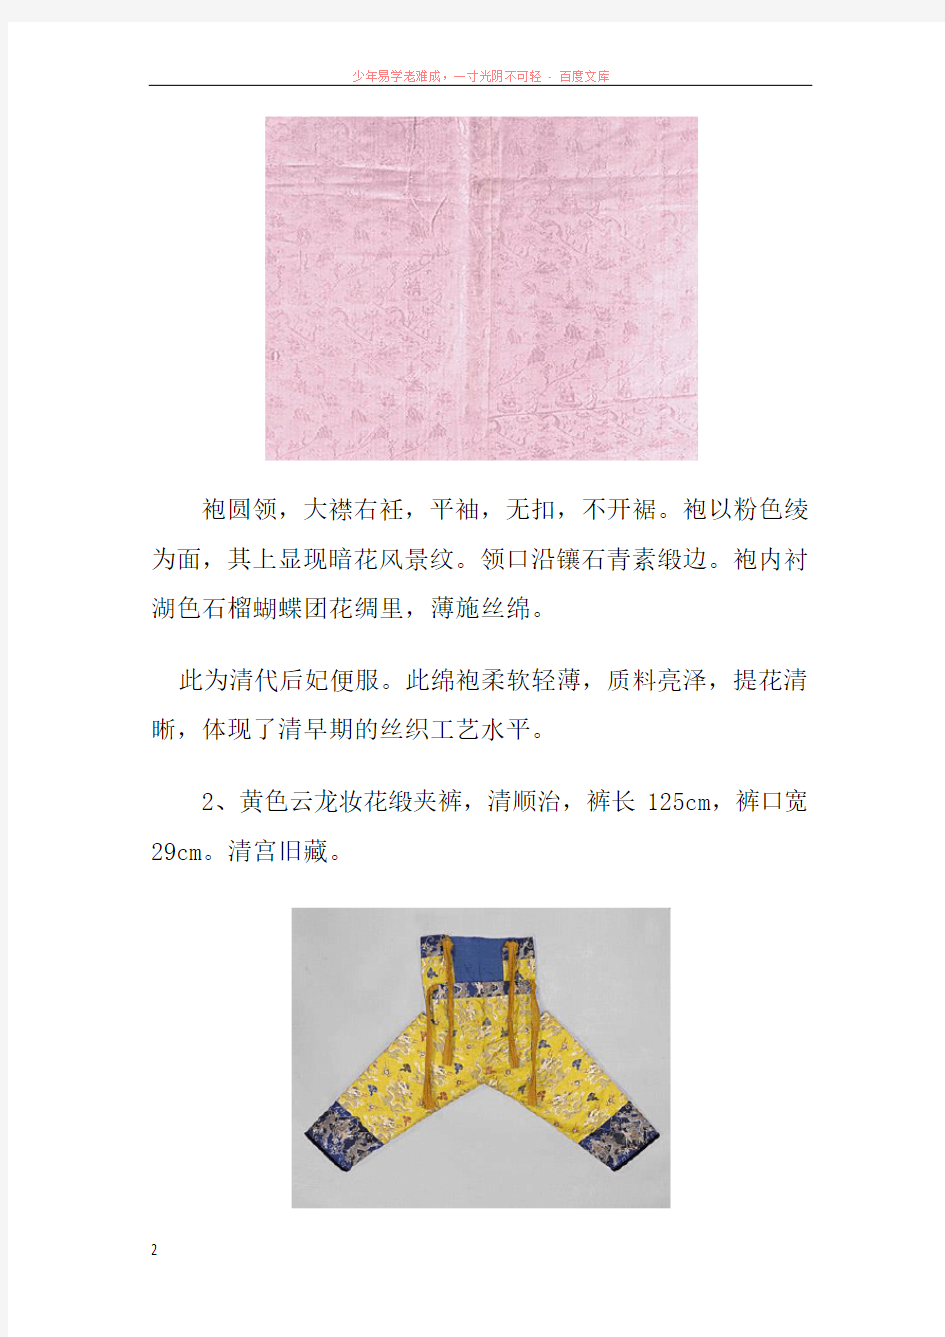 清朝宫廷衣服样式(附图)